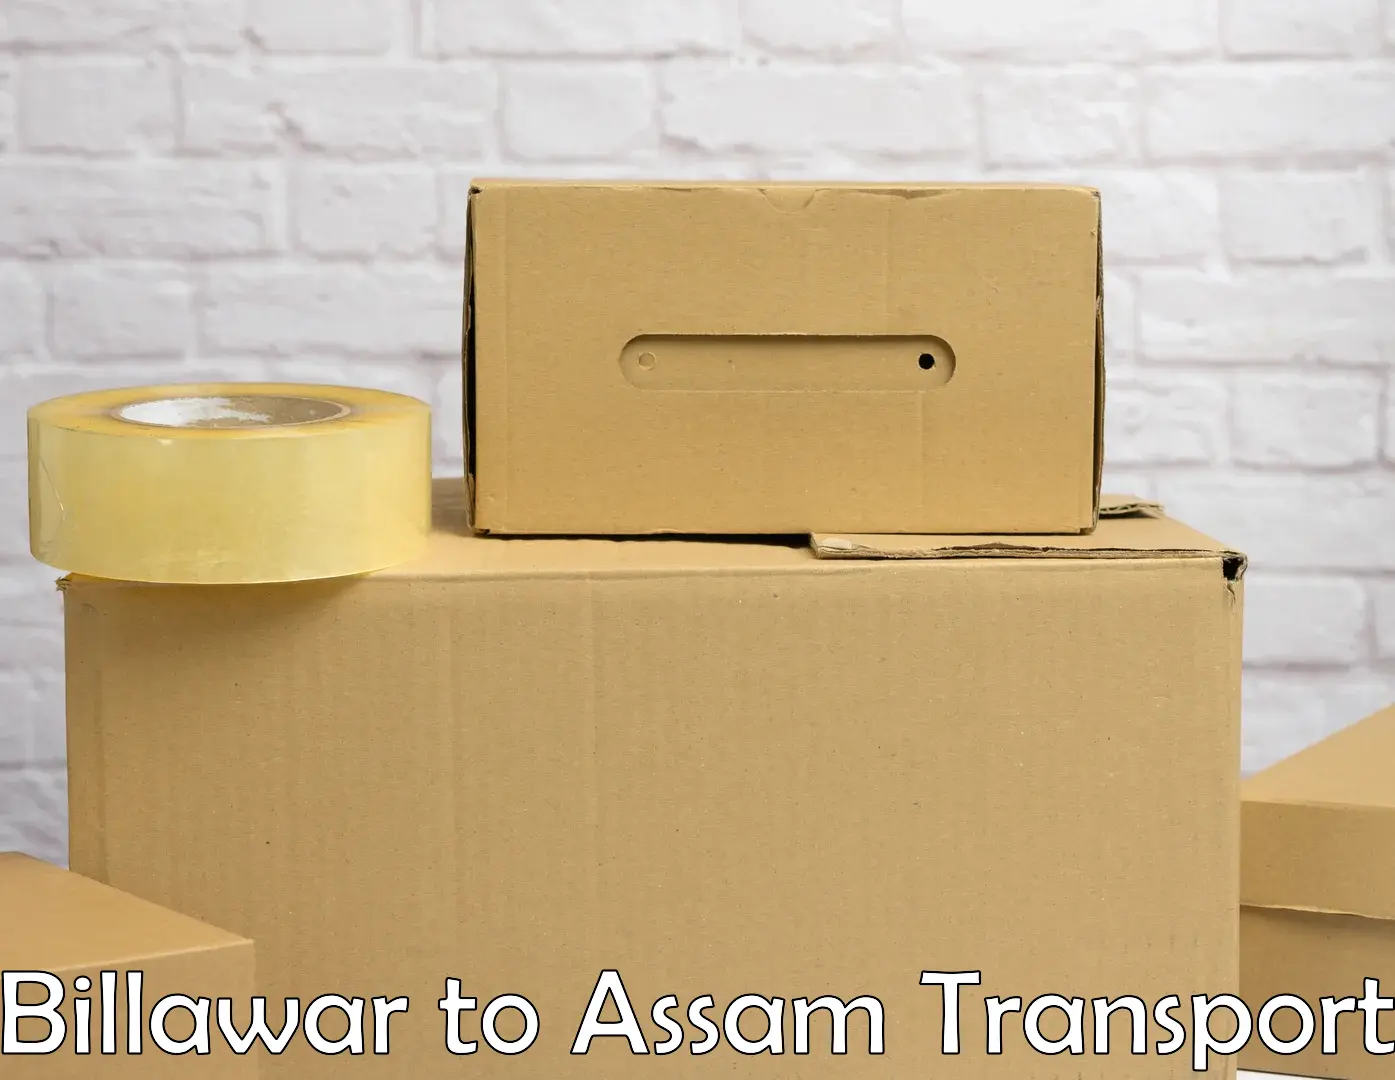 Two wheeler parcel service Billawar to Assam